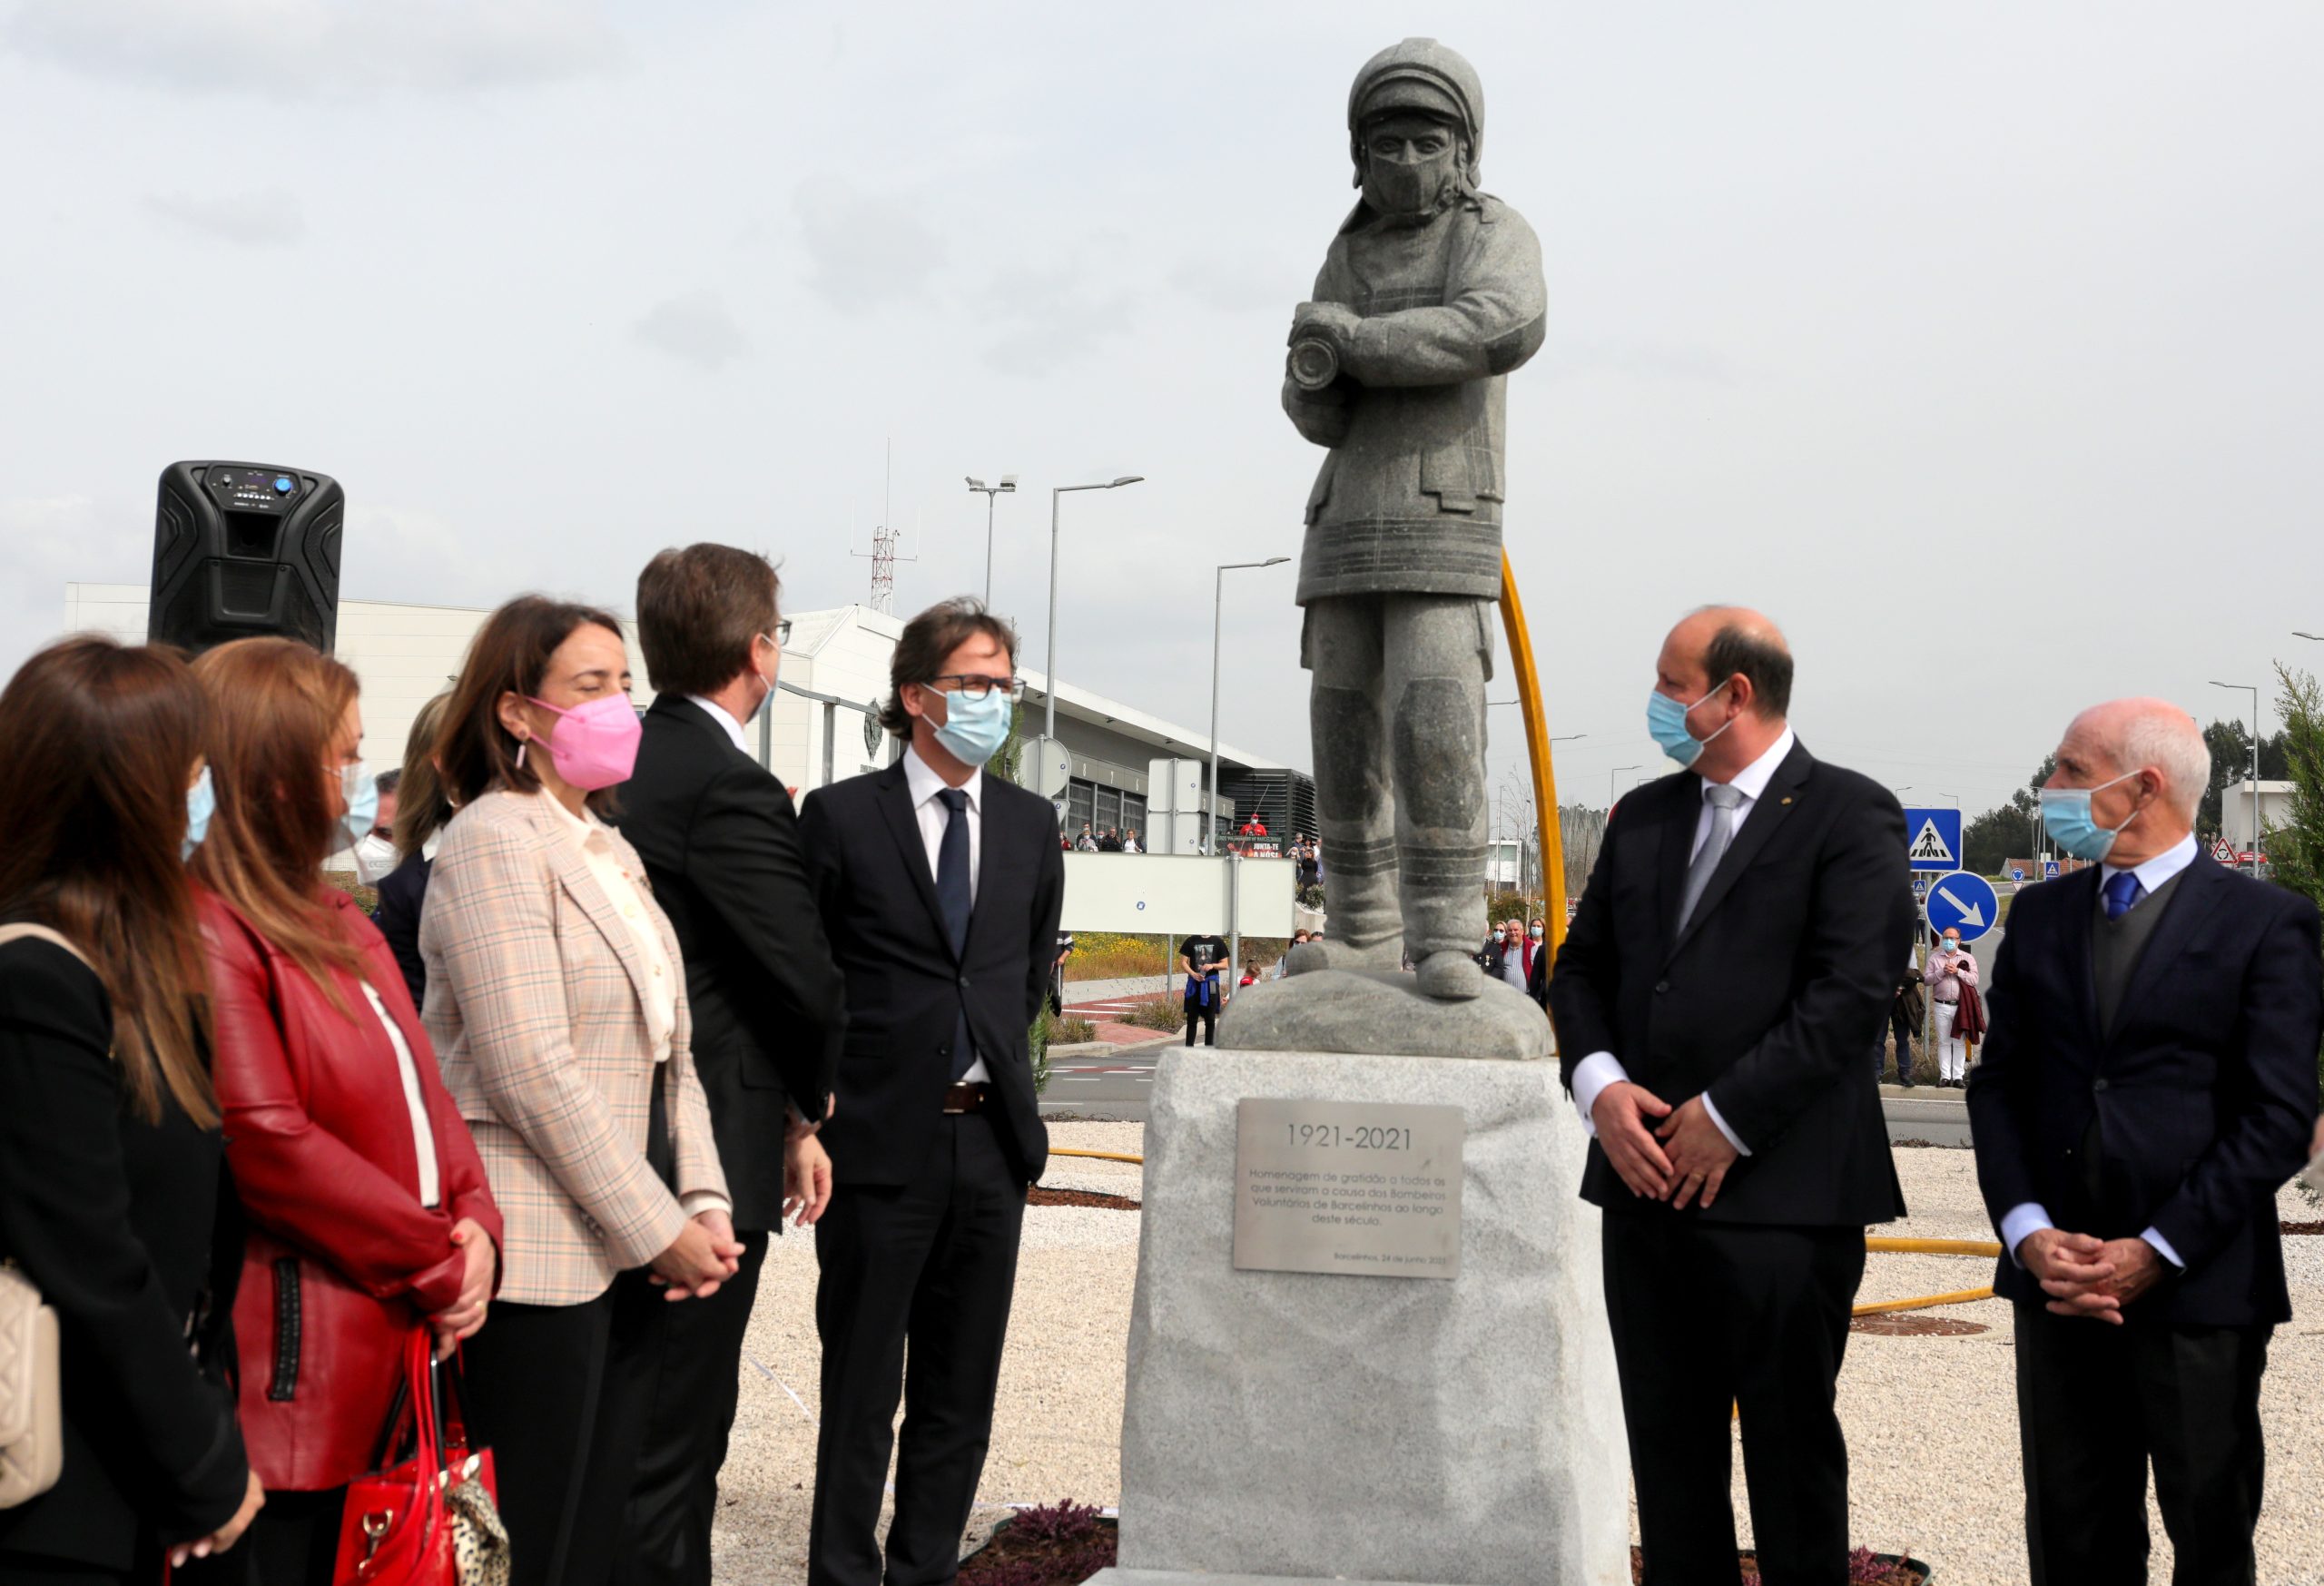 Executivo Municipal na inauguração da estátua em homenagem aos Bombeiros de Barcelinhos